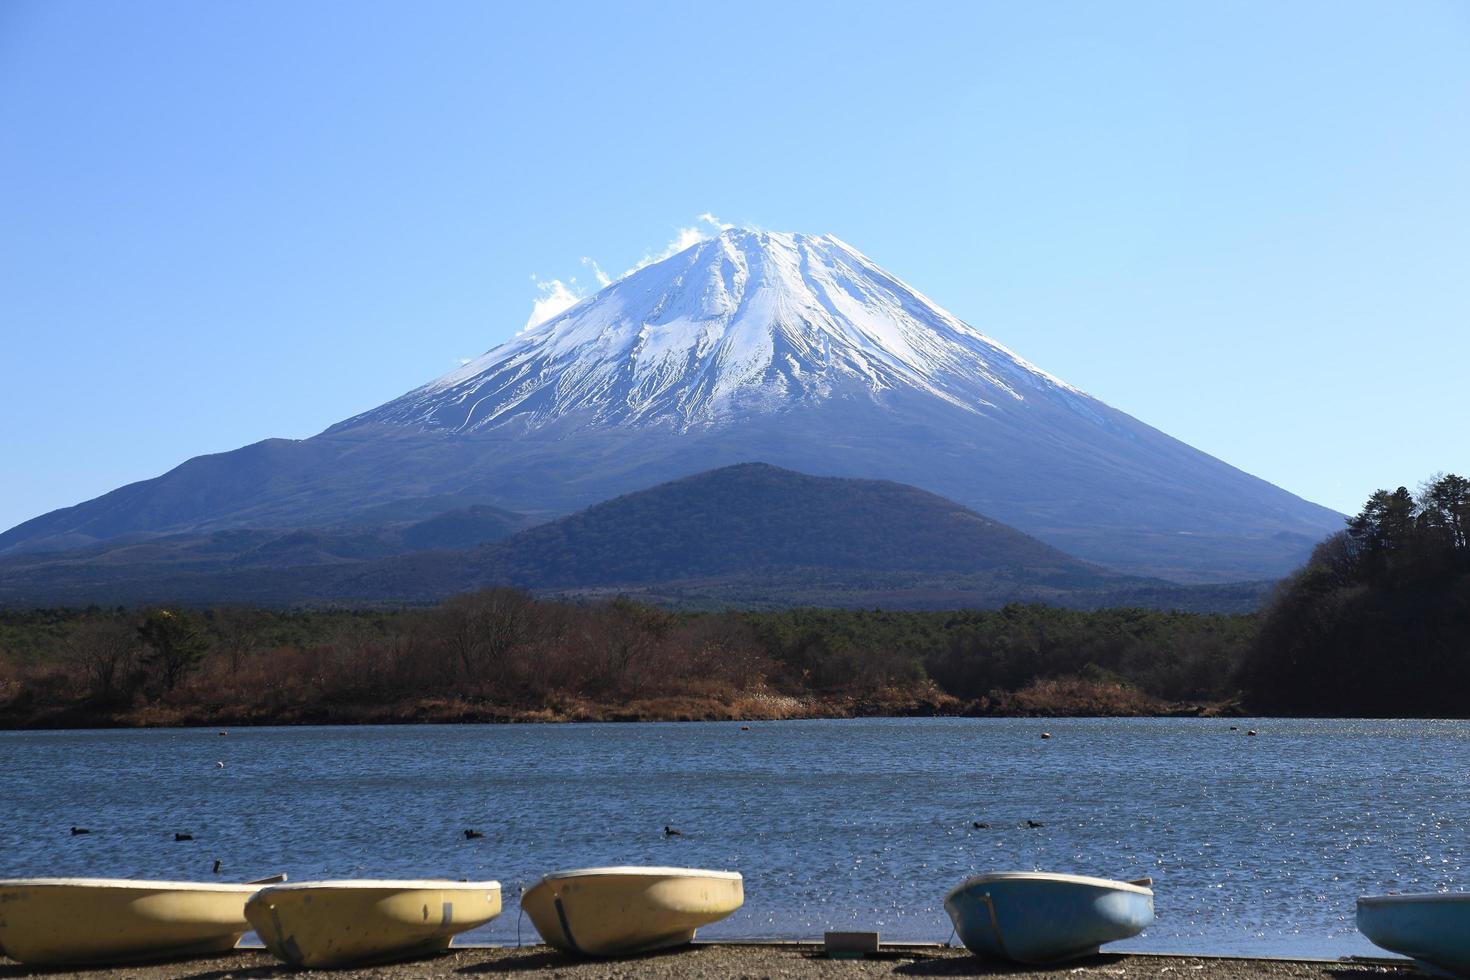 le mont fuji et le lac shoji au japon photo